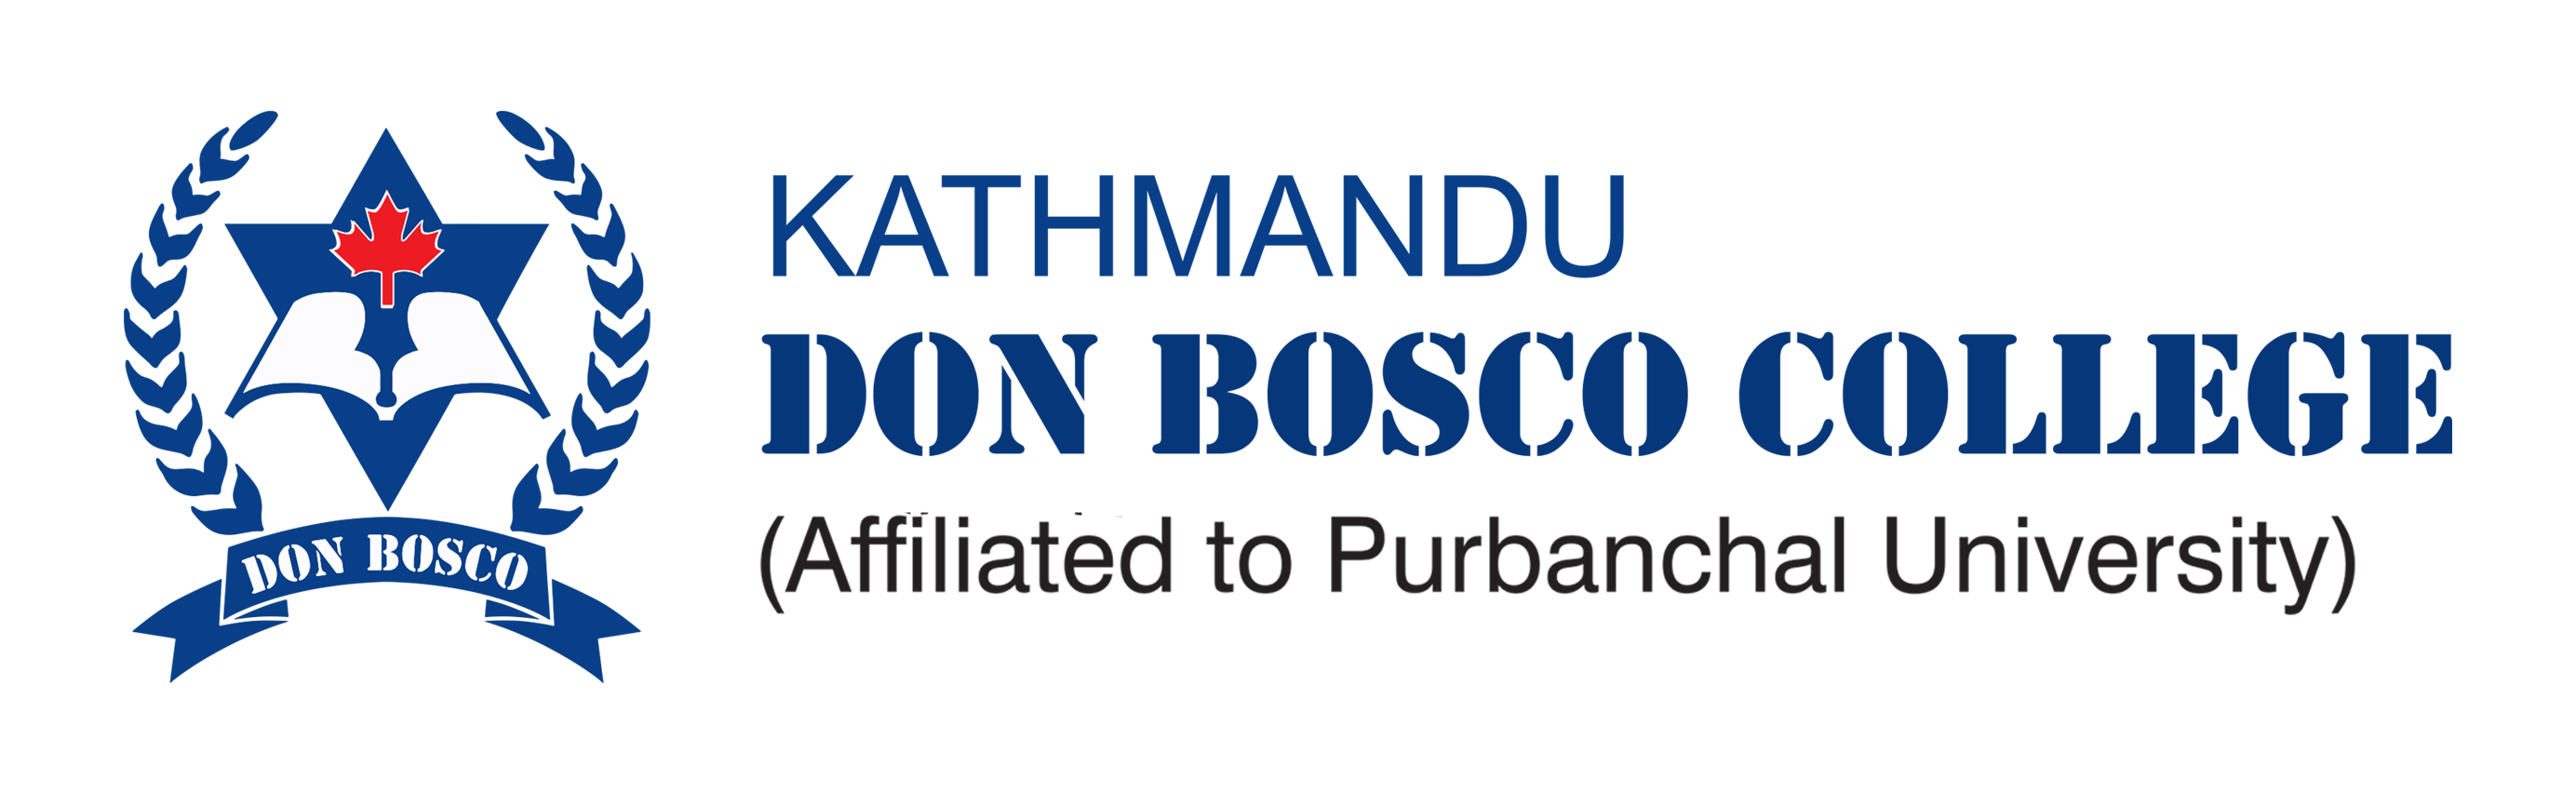 Kathmandu Don Bosco College logo